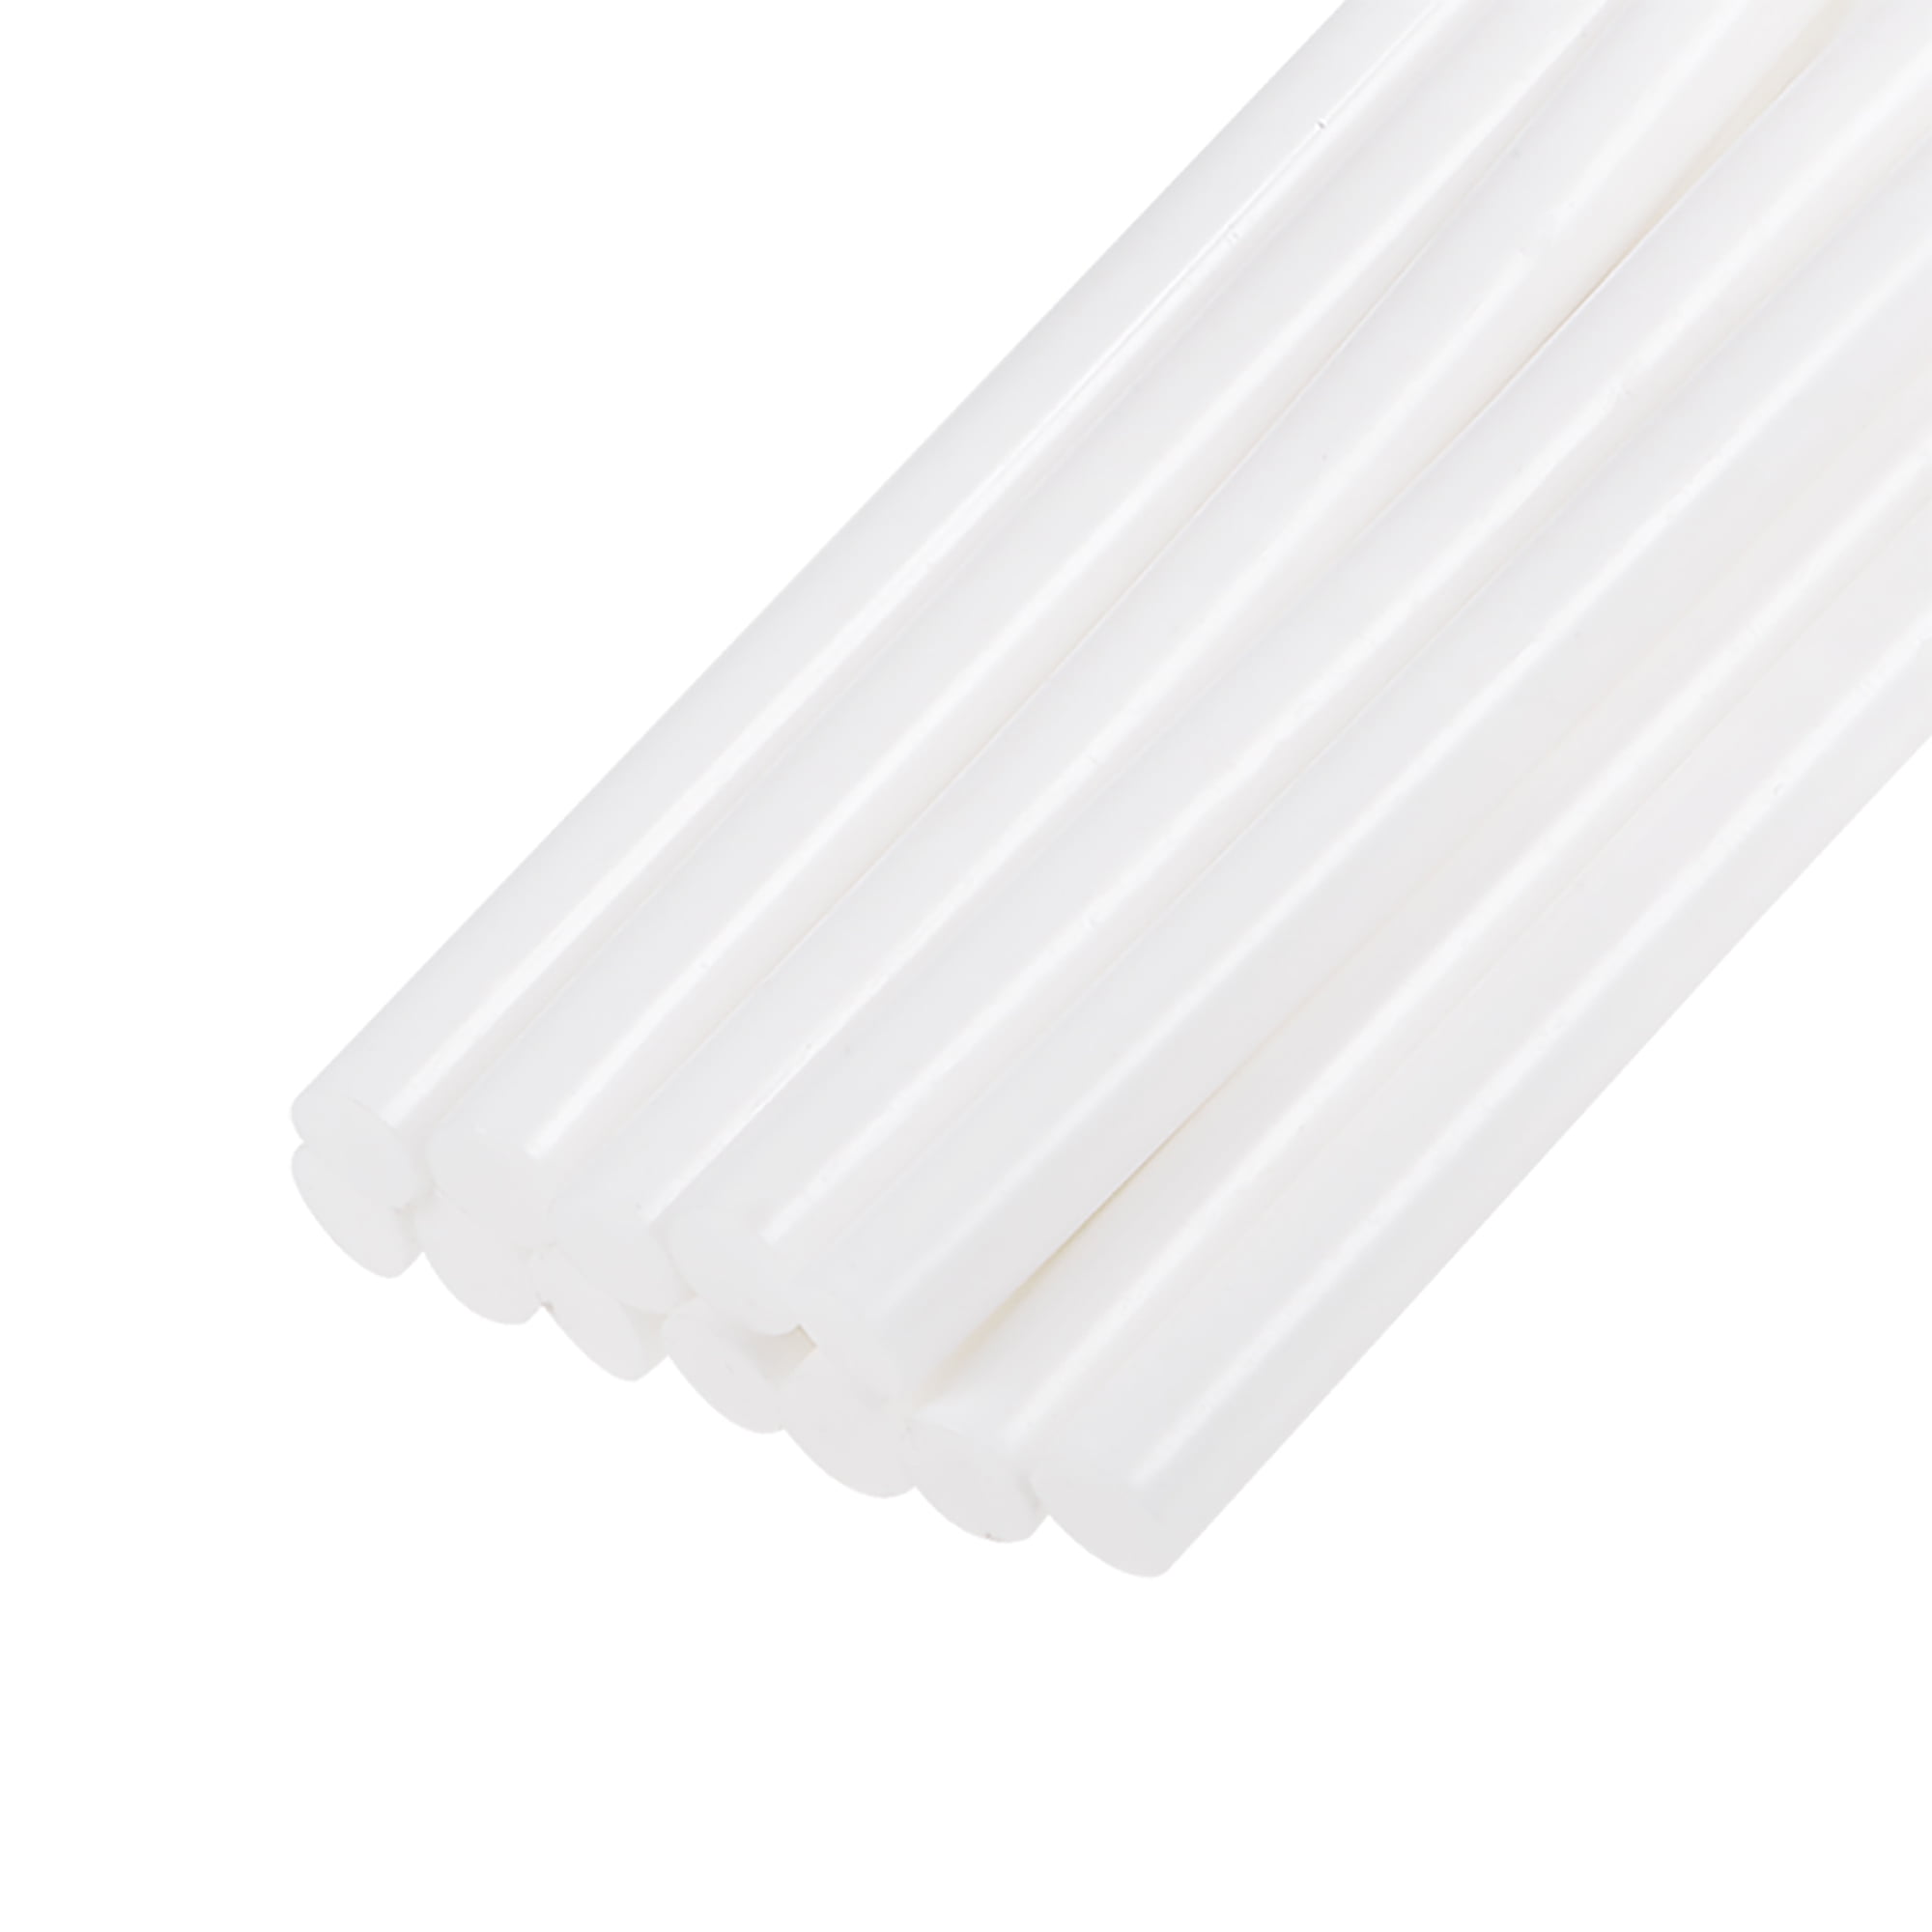 Unique Bargains 0.27 x 4 White Mini Hot Glue Sticks for Glue 12